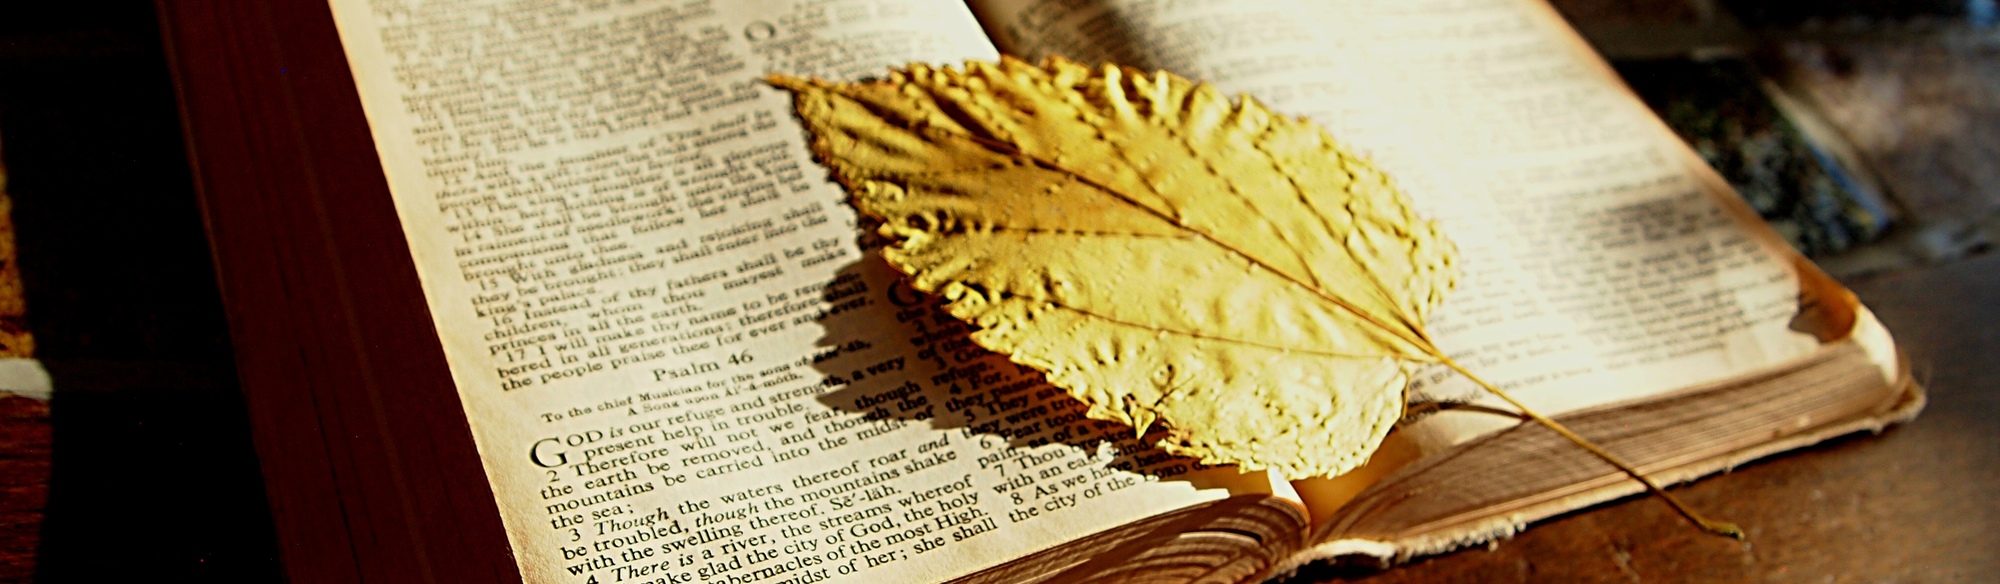 leaf on Bible image